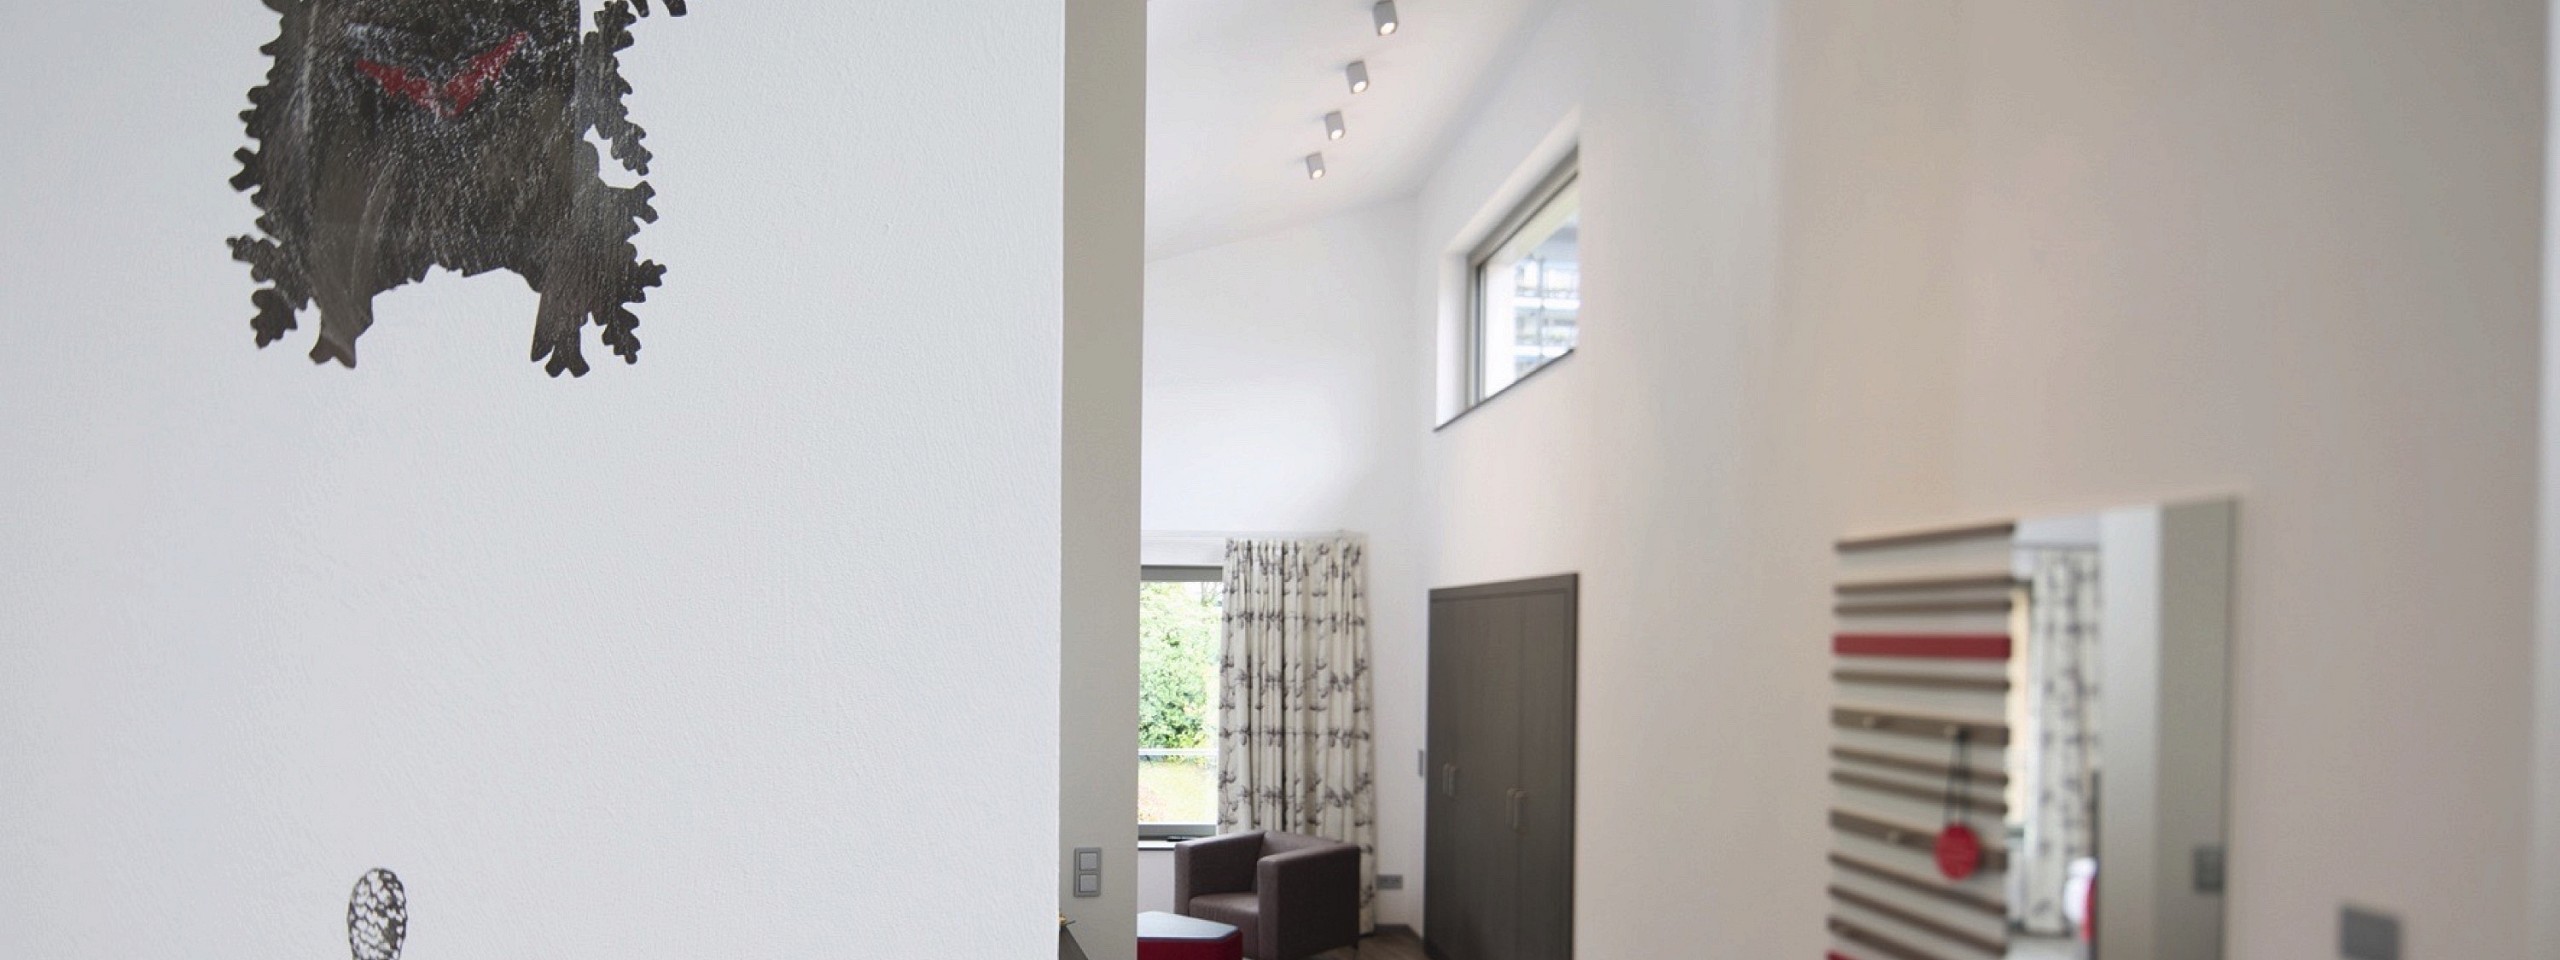 Flurbereich eines der Hotelzimmer im Schwarzwald mit einer gemalten Kuckucksuhr an der Wand.